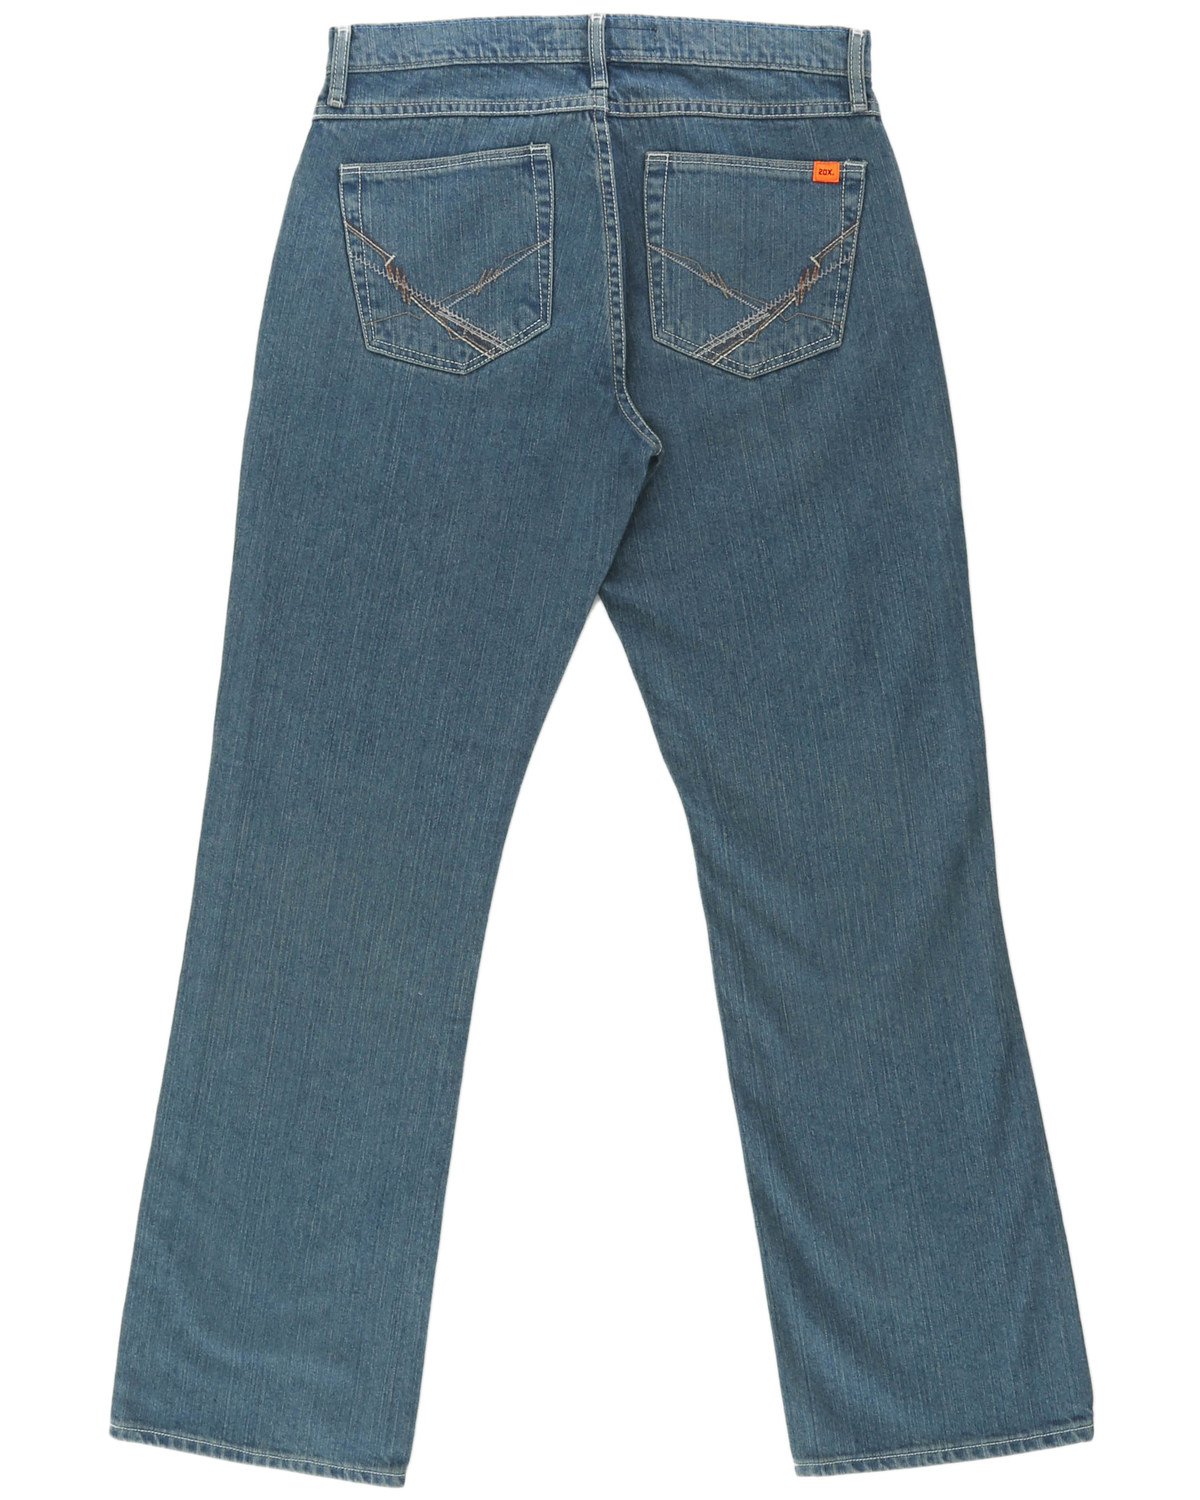 Wrangler 20X Men's FR Cool Vantage Vintage Slim Fit Straight Jeans